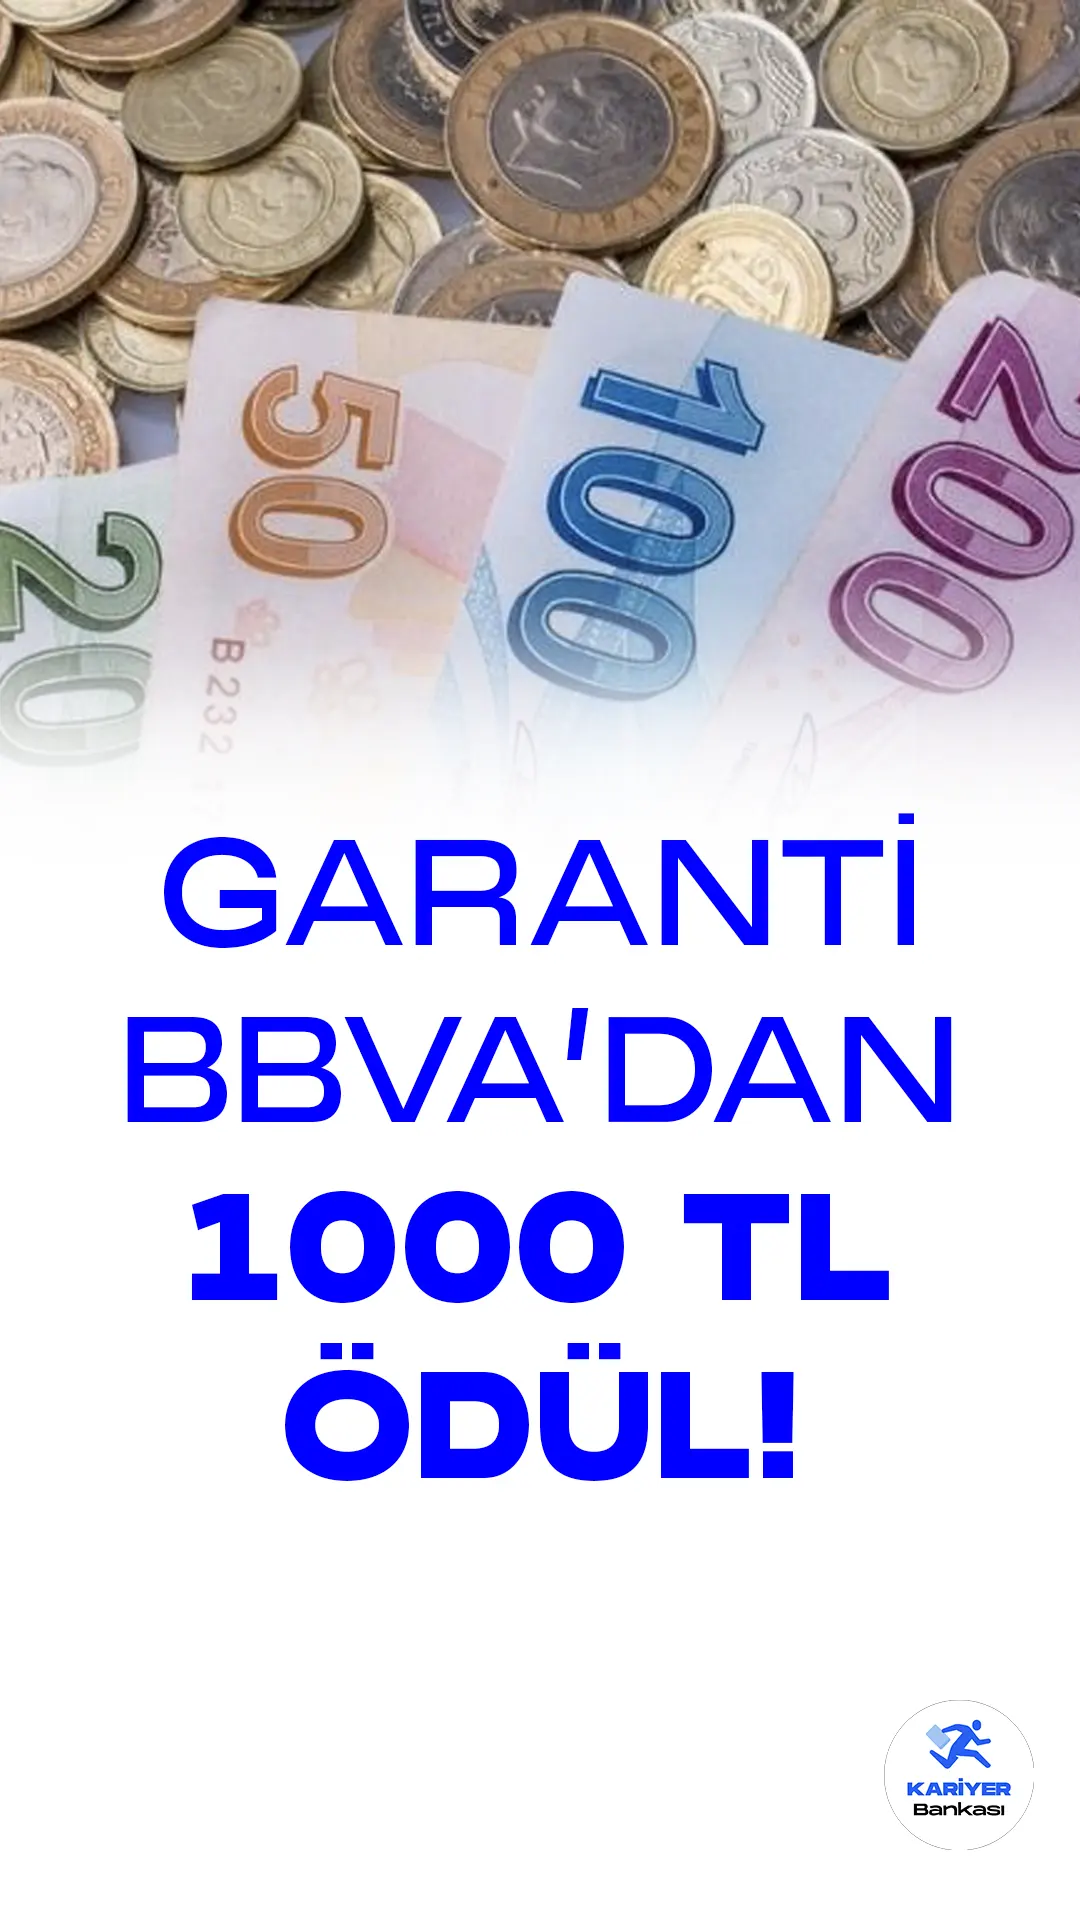 Garanti BBVA Müşterilerine özel 1000 TL ödül kampanyası başladı. Kampanya 31 Mart 2023 tarihine kadar geçerli olacak. Garanti BBVA müşterileri davet ettikleri yakınları için toplamda 1000 TL ödül alabilecek.